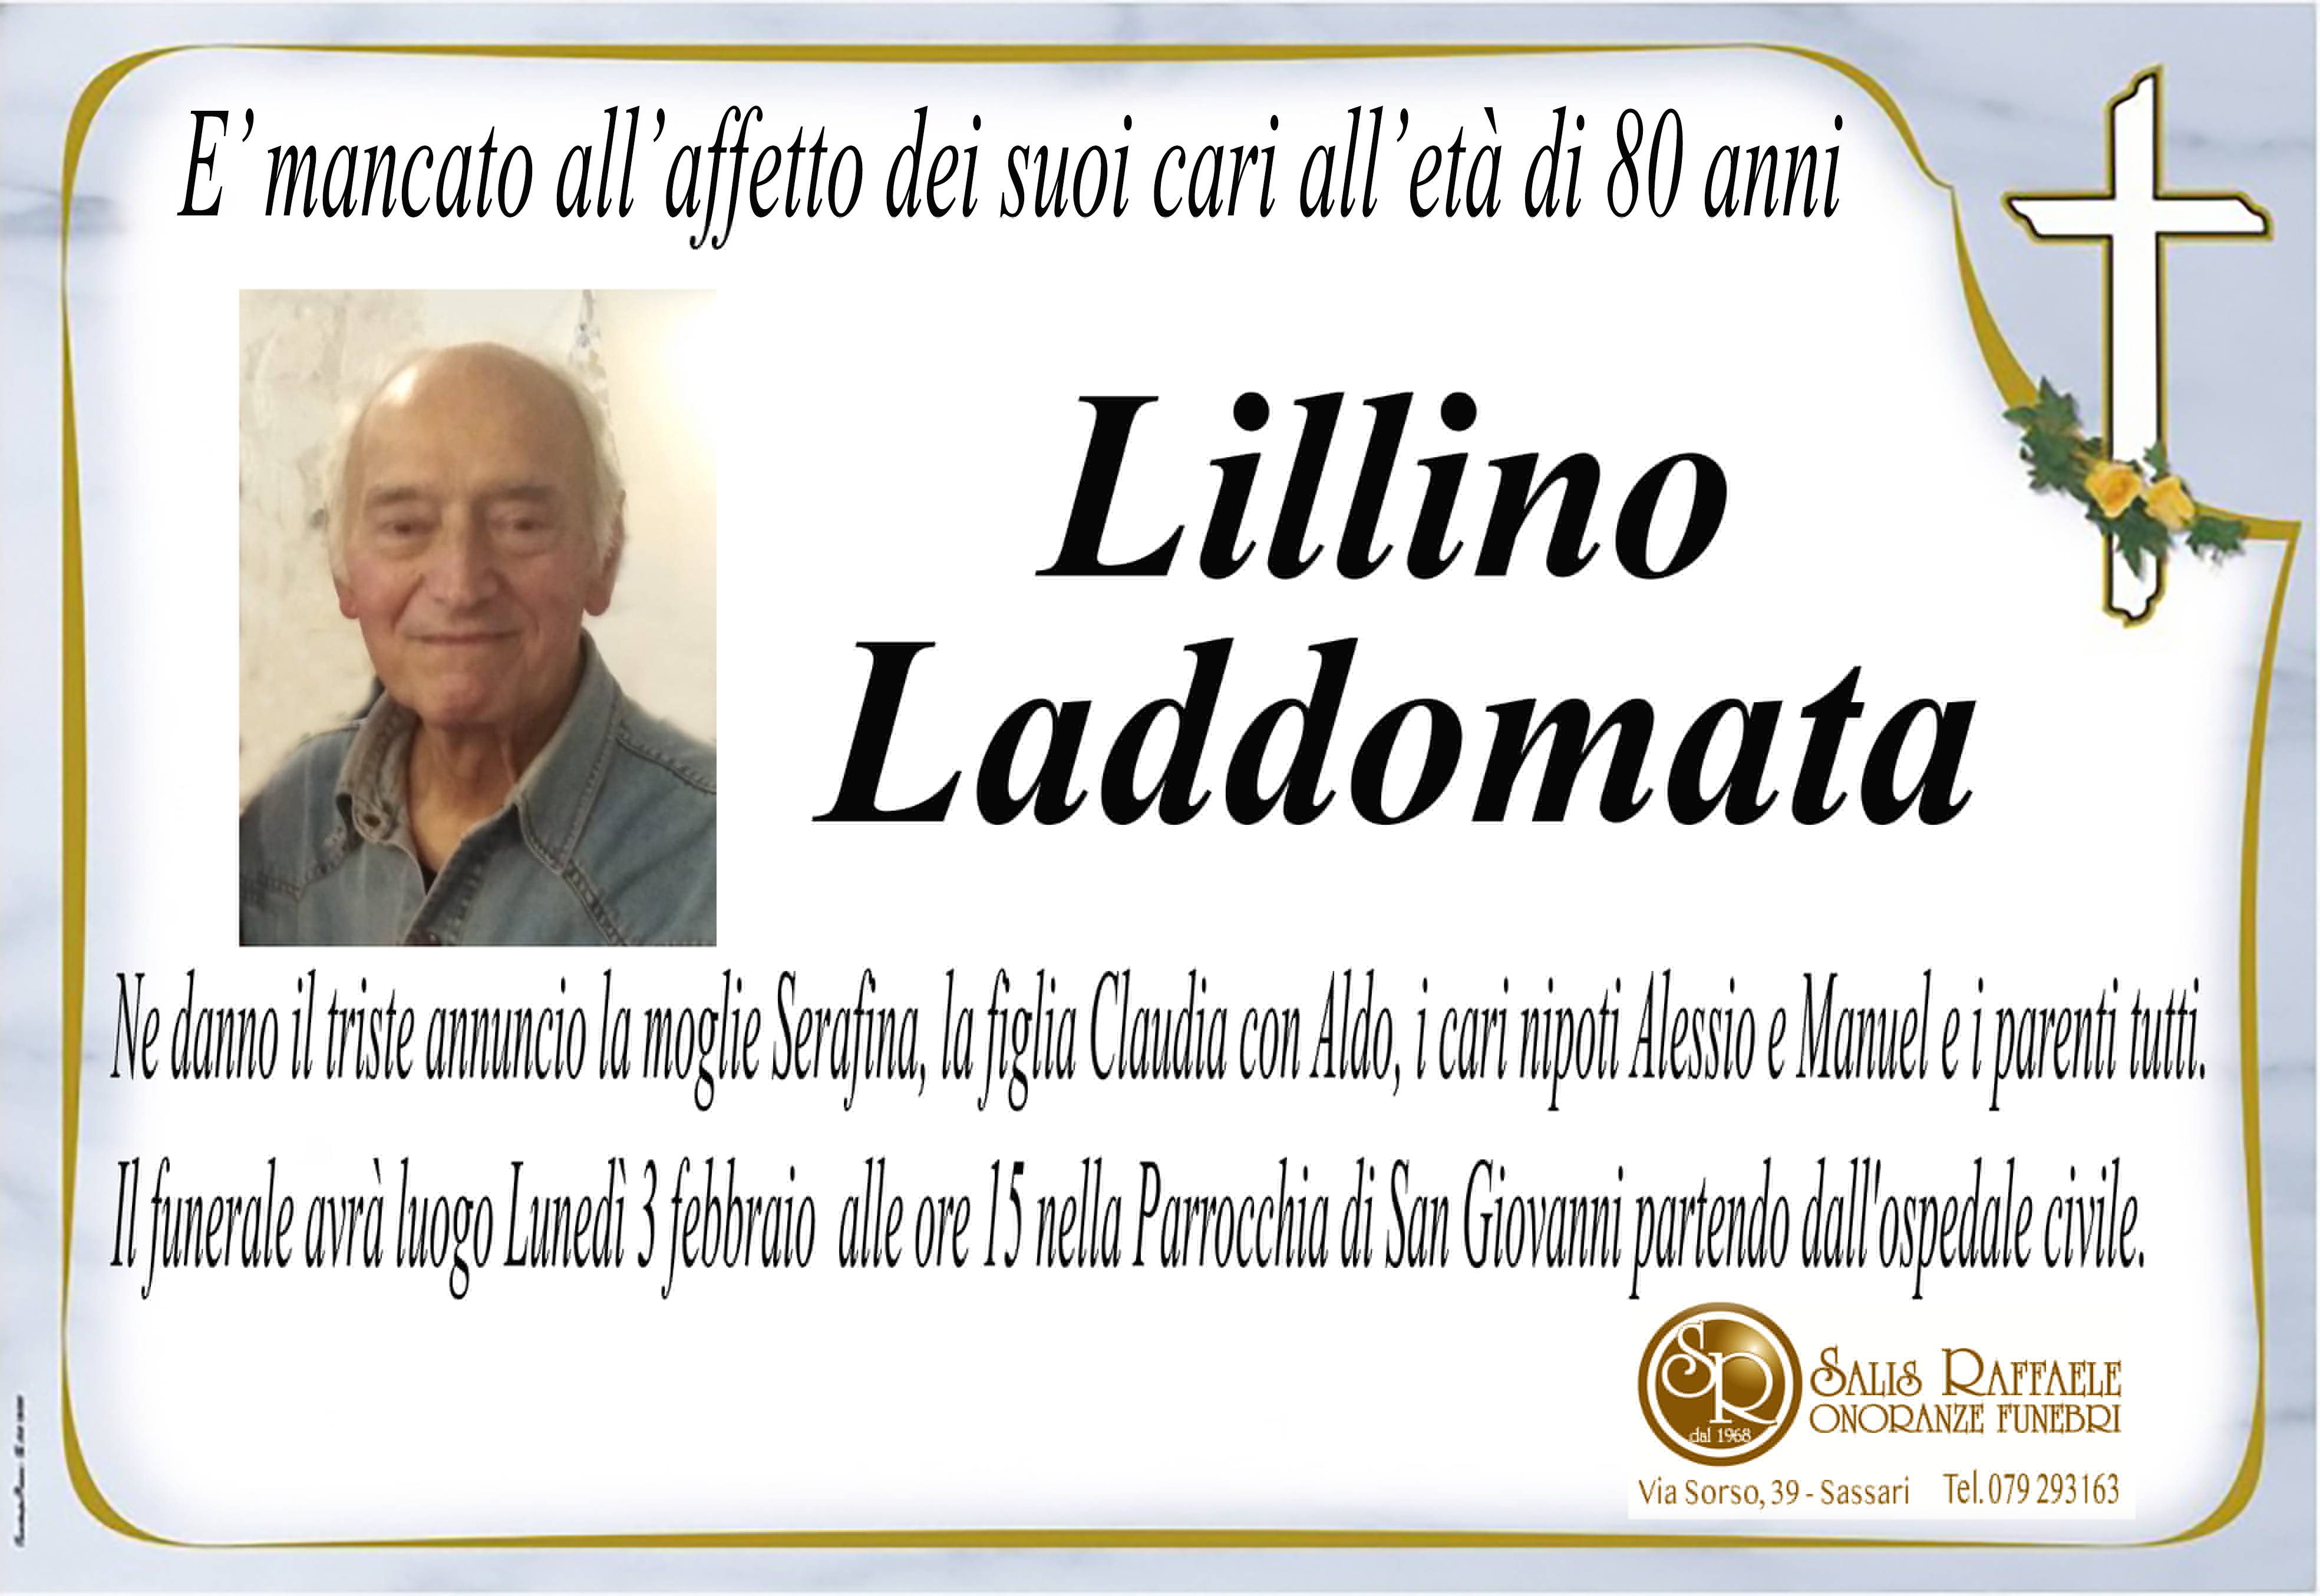 Lillino Laddomata